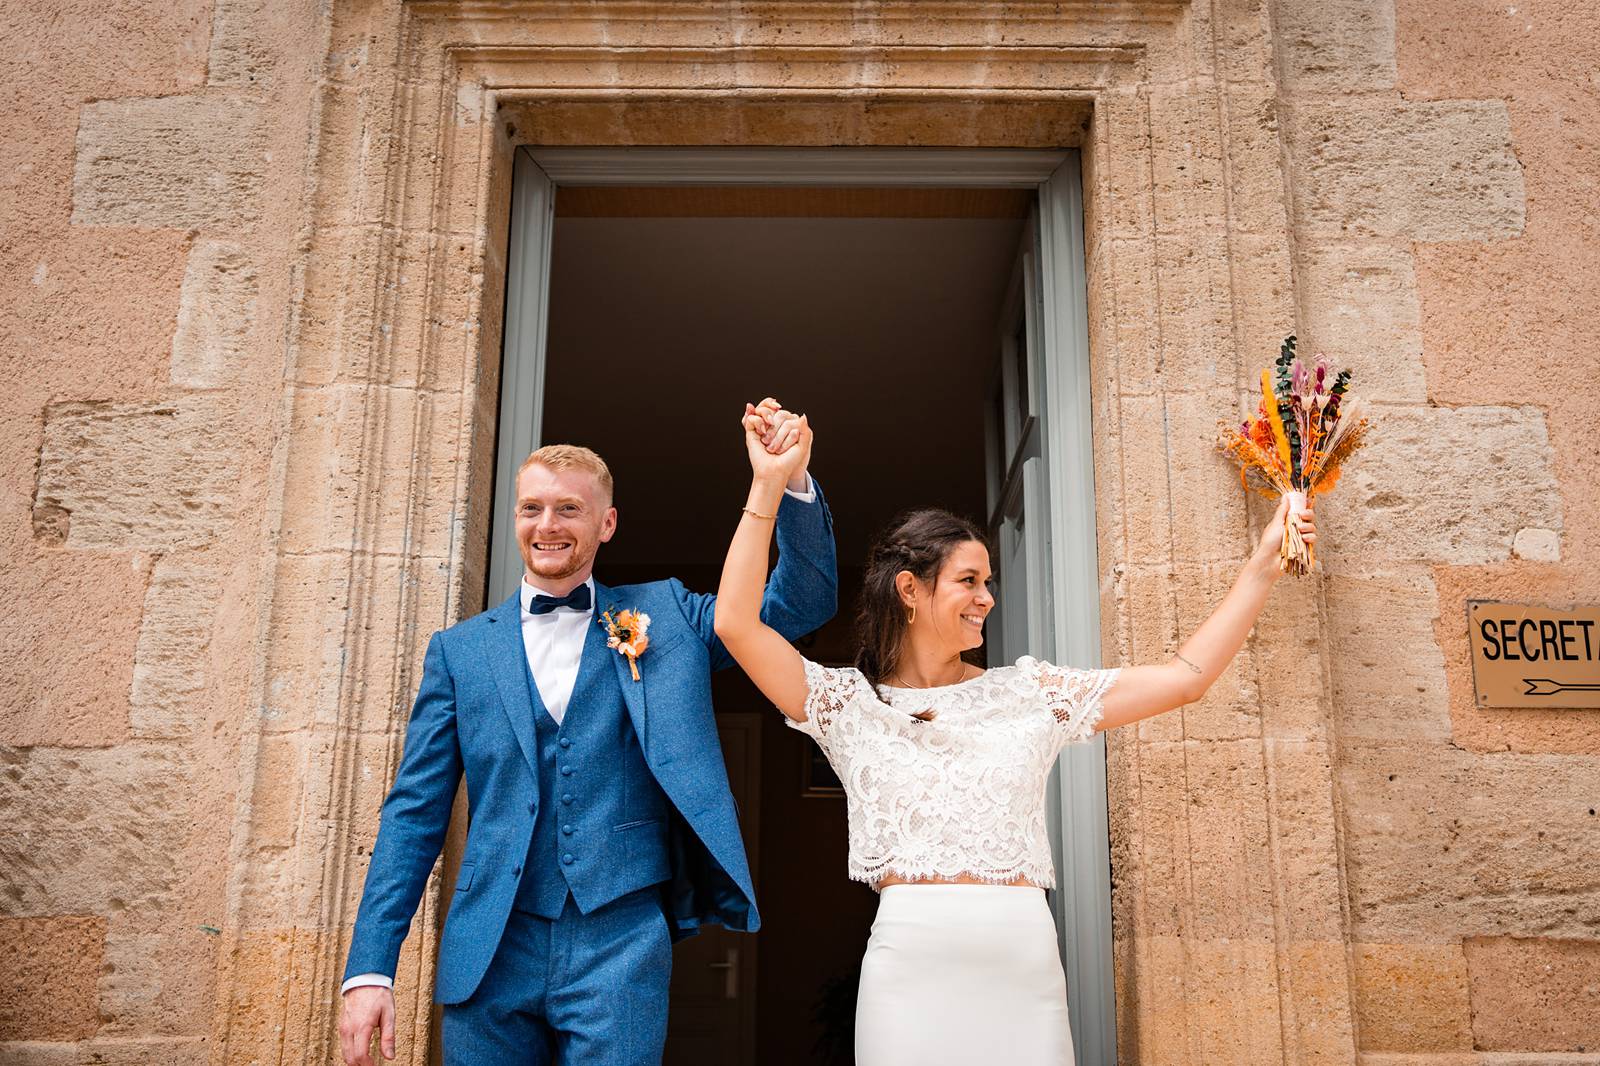 Mariage au Château Peller Laroque en Gironde. Mariage familial, religieux et authentique. Alexandre Roschewitz photographe mariage.